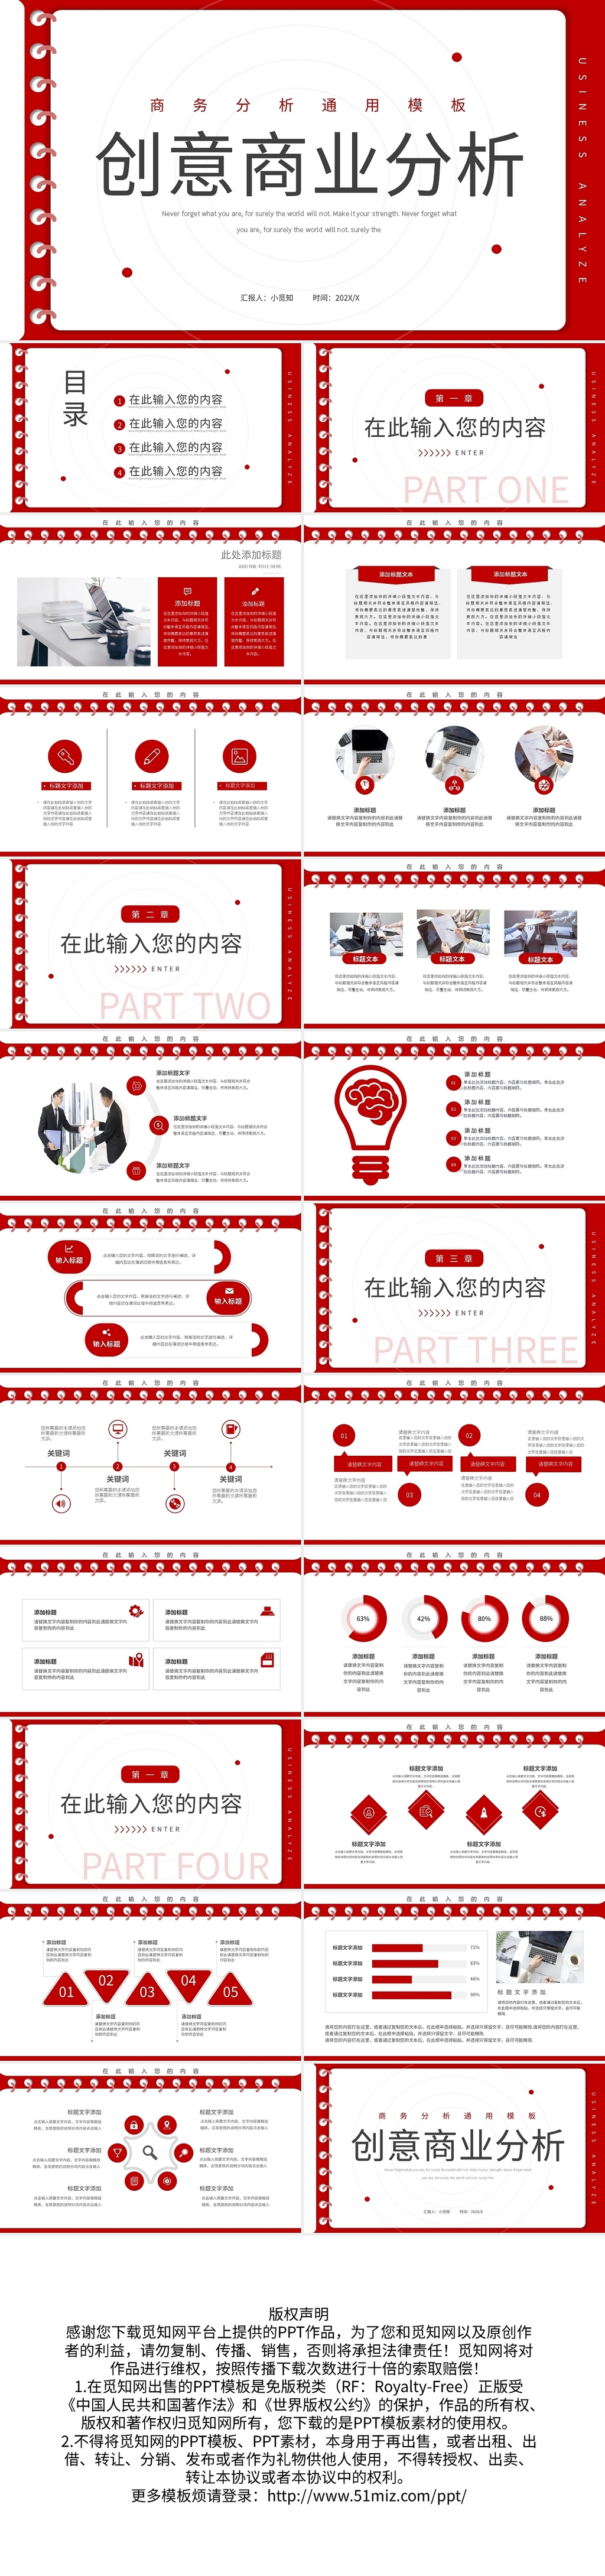 红色商务创意商业分析PPT模板宣传PPT动态PPT线圈创意商业分析